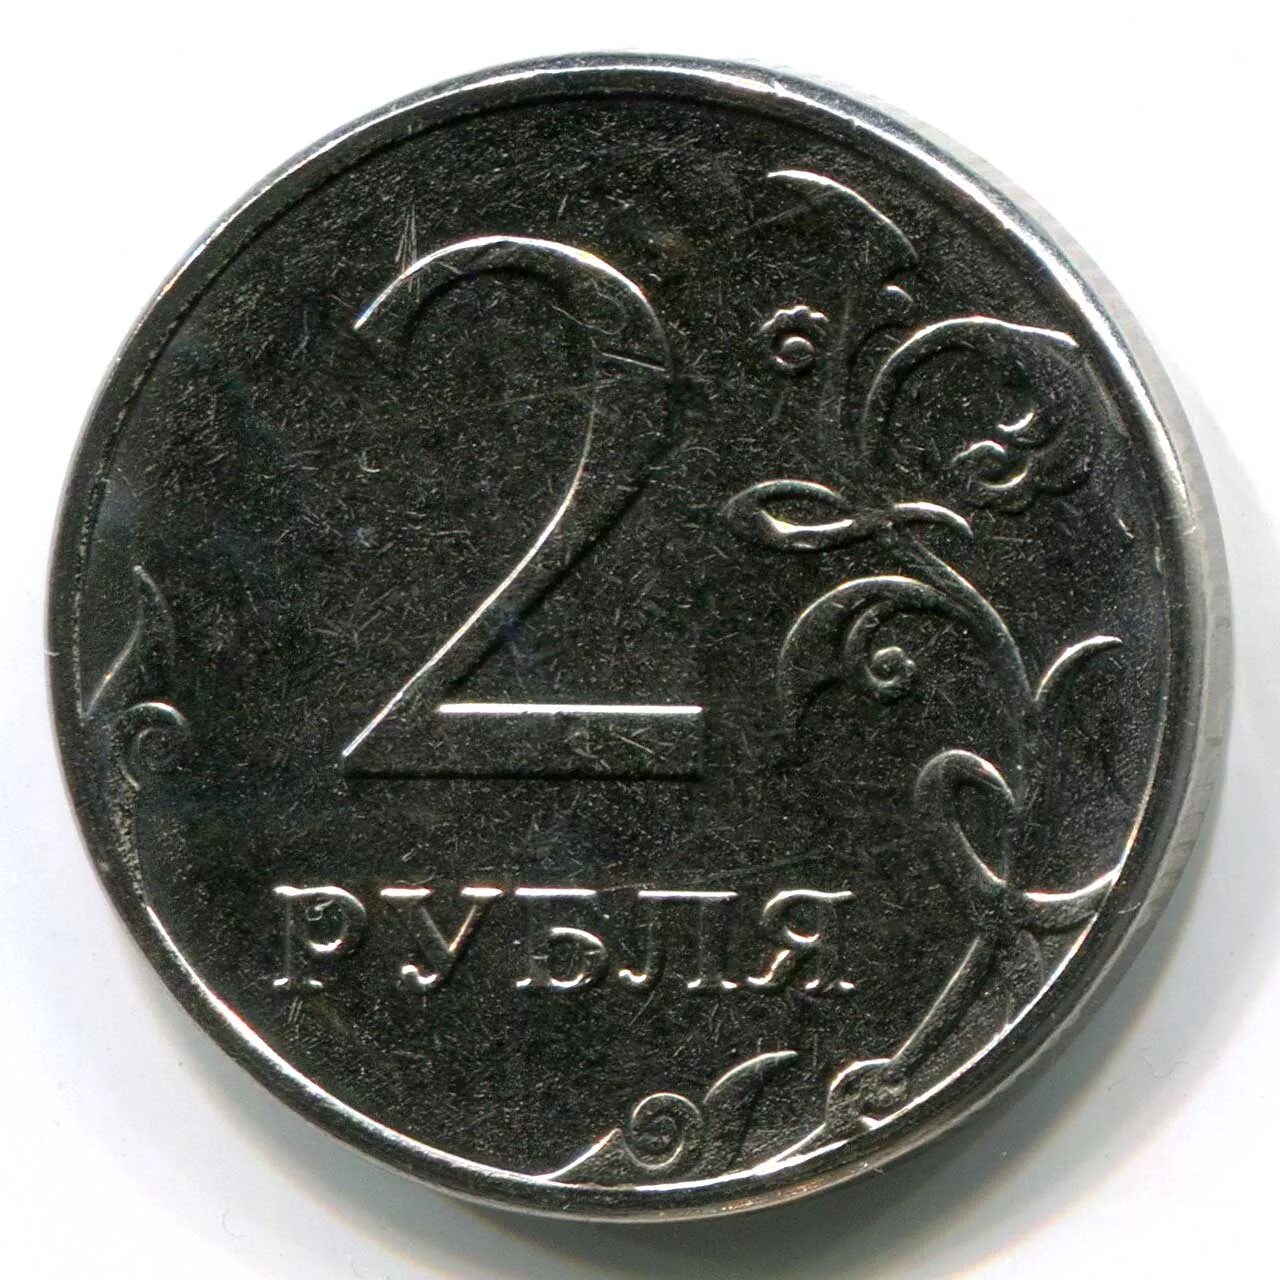 B2 цена. 2 Рубля. Монета 2 руб. Монеты России 2 рубля. Рубль.